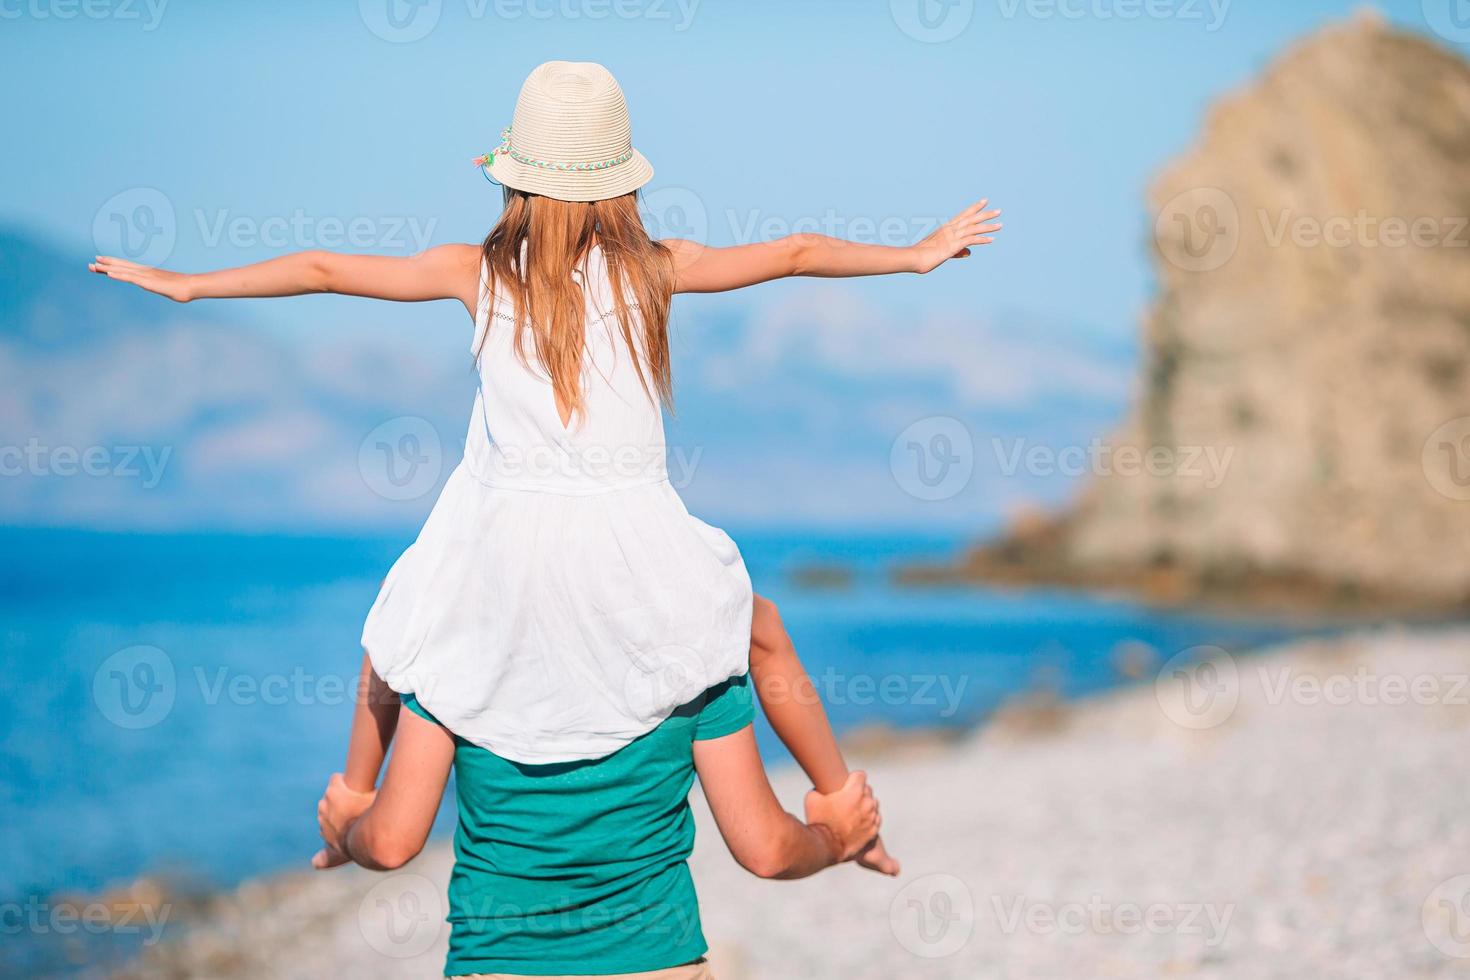 liten flicka och Lycklig pappa har roligt under strand semester foto